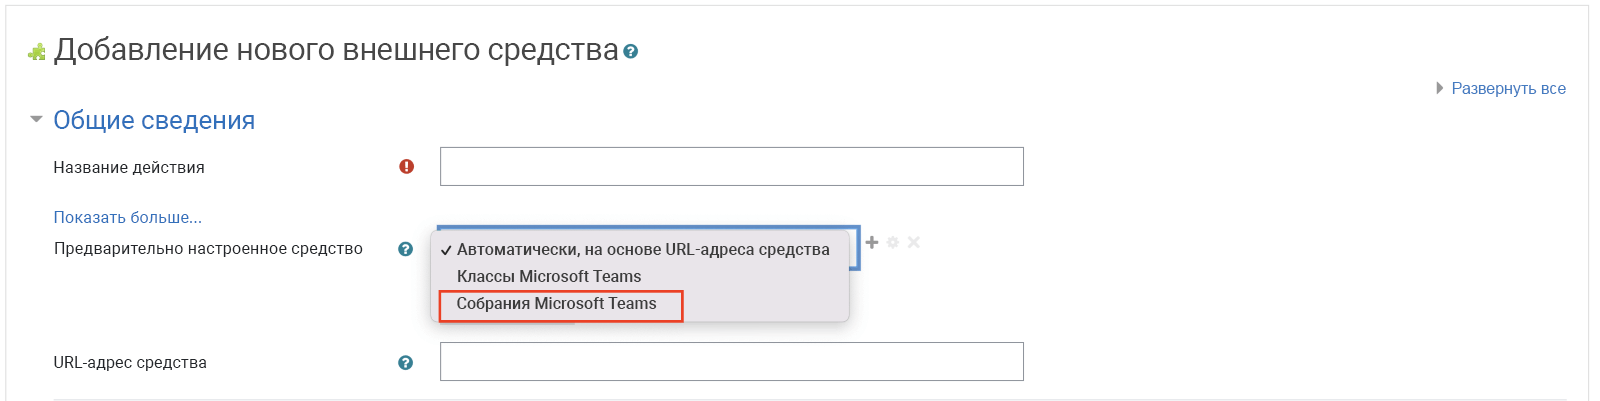 Снимок экрана Moodle: выбор "Собрания Teams" в раскрывающемся списке предварительно настроенного средства.